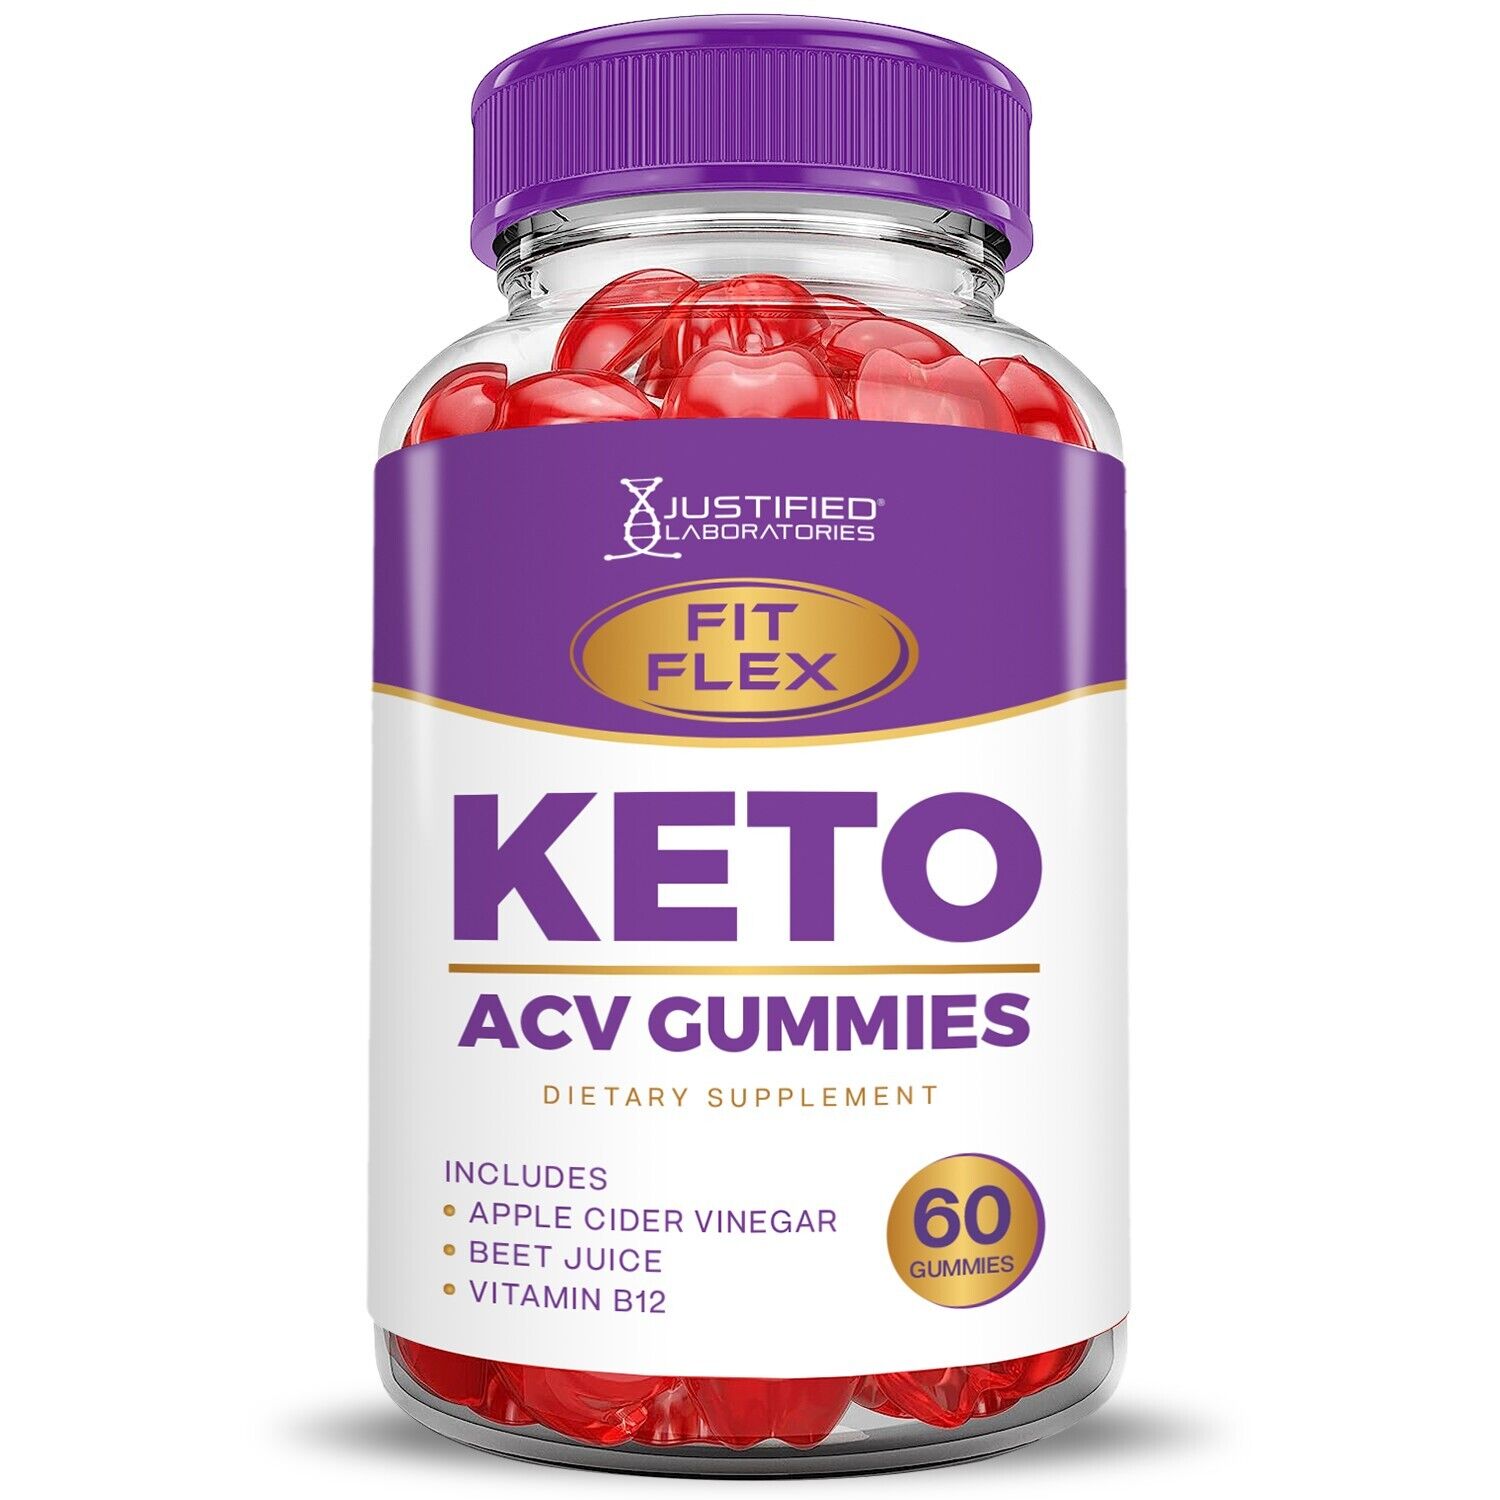 Fit Flex Keto ACV Gummies 1000mg & Keto ACV Pills 1275MG Bundle Justified Laboratories - фотография #2